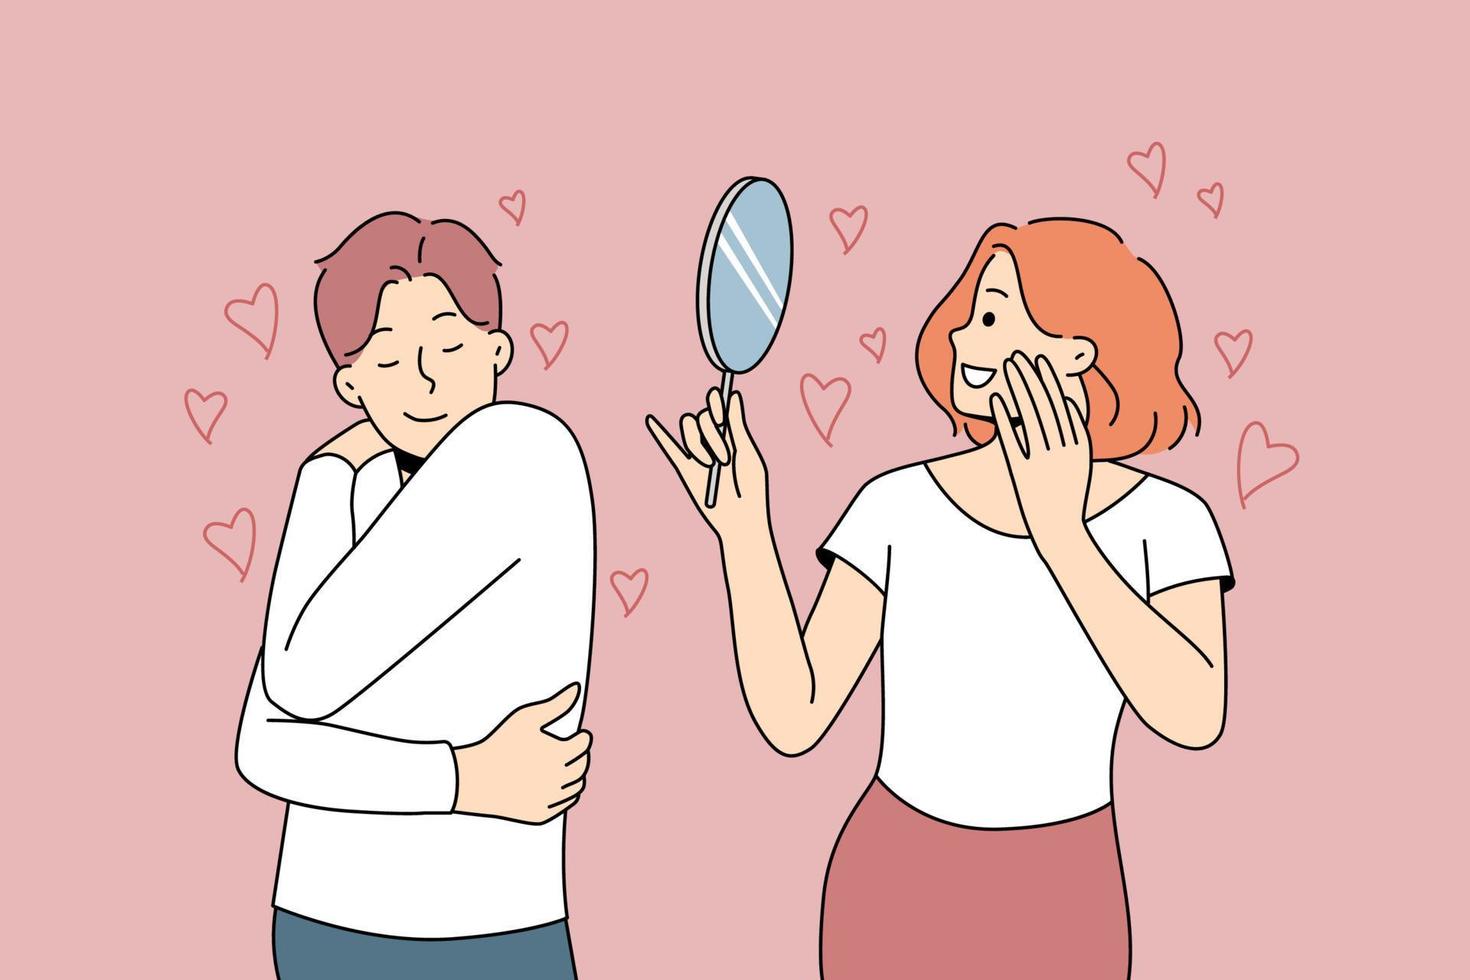 gelukkig mensen op zoek in spiegel of knuffel zich tonen eigenliefde en bewondering. Mens en vrouw liefhebbend binnenste schoonheid. vector illustratie.